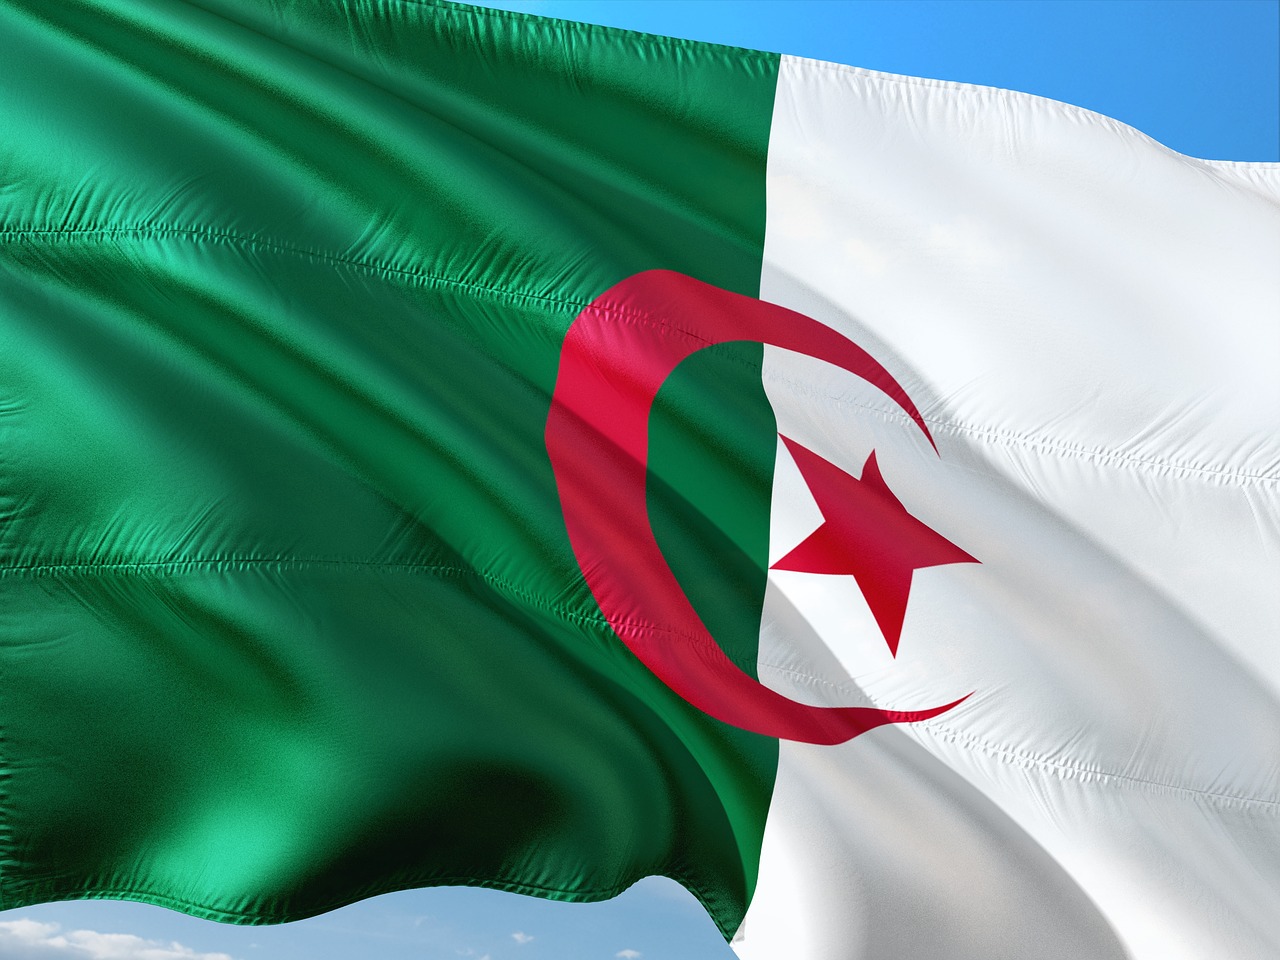 Конвенция о взаимной правовой помощи между Россией и Алжиром (от 10 октября 2017 года) регулирует многие правовые вопросы во взаимоотношениях двух стран.